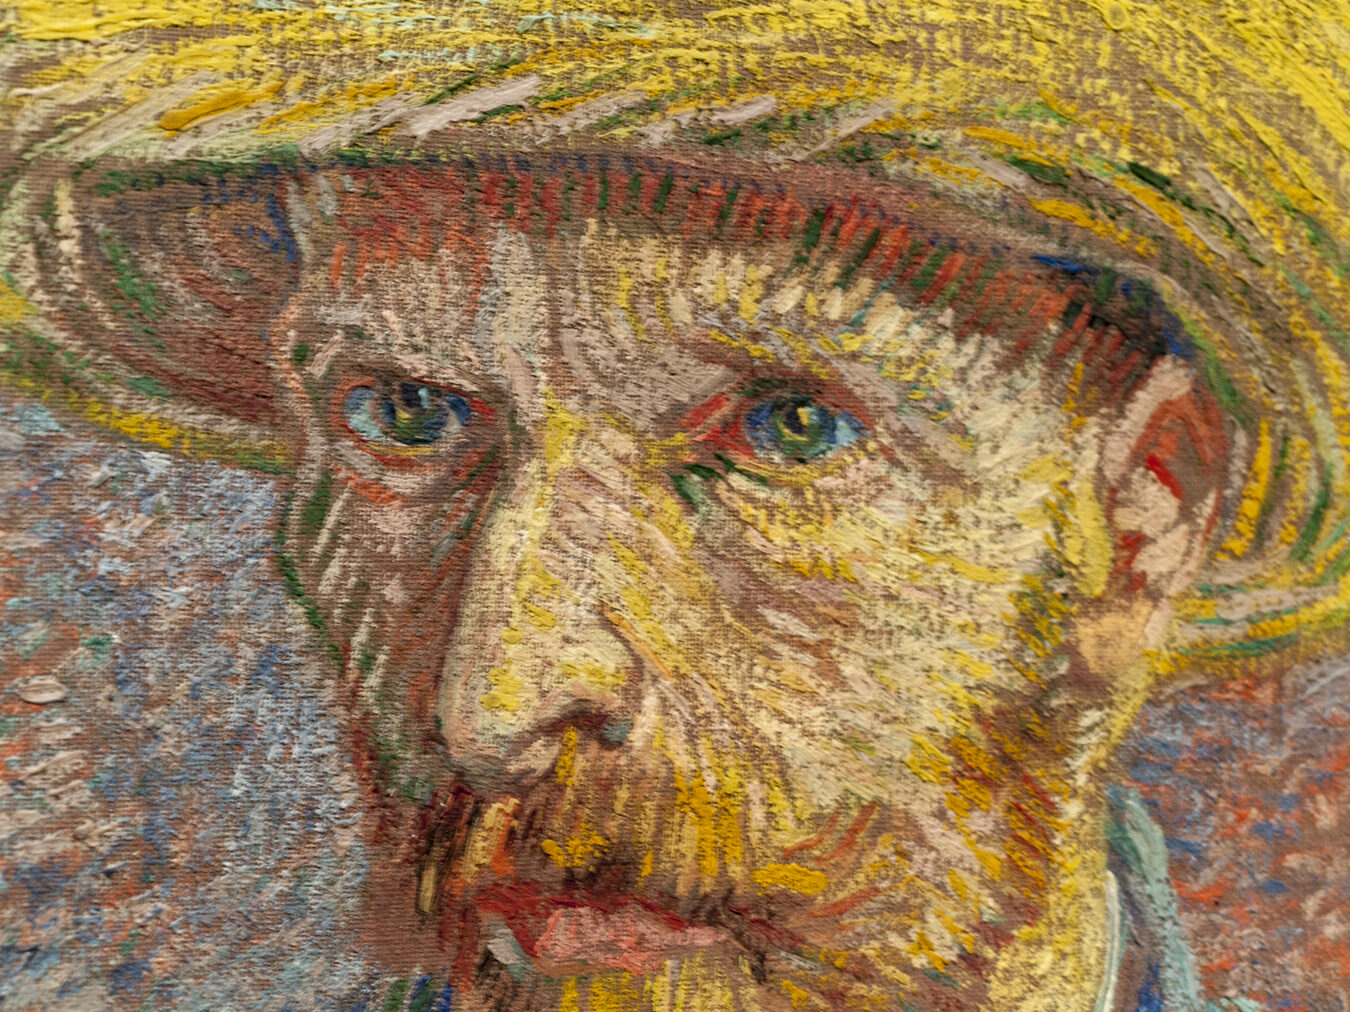 La bibliografía de Van Gogh: obras y estudios sobre el genio del postimpresionismo